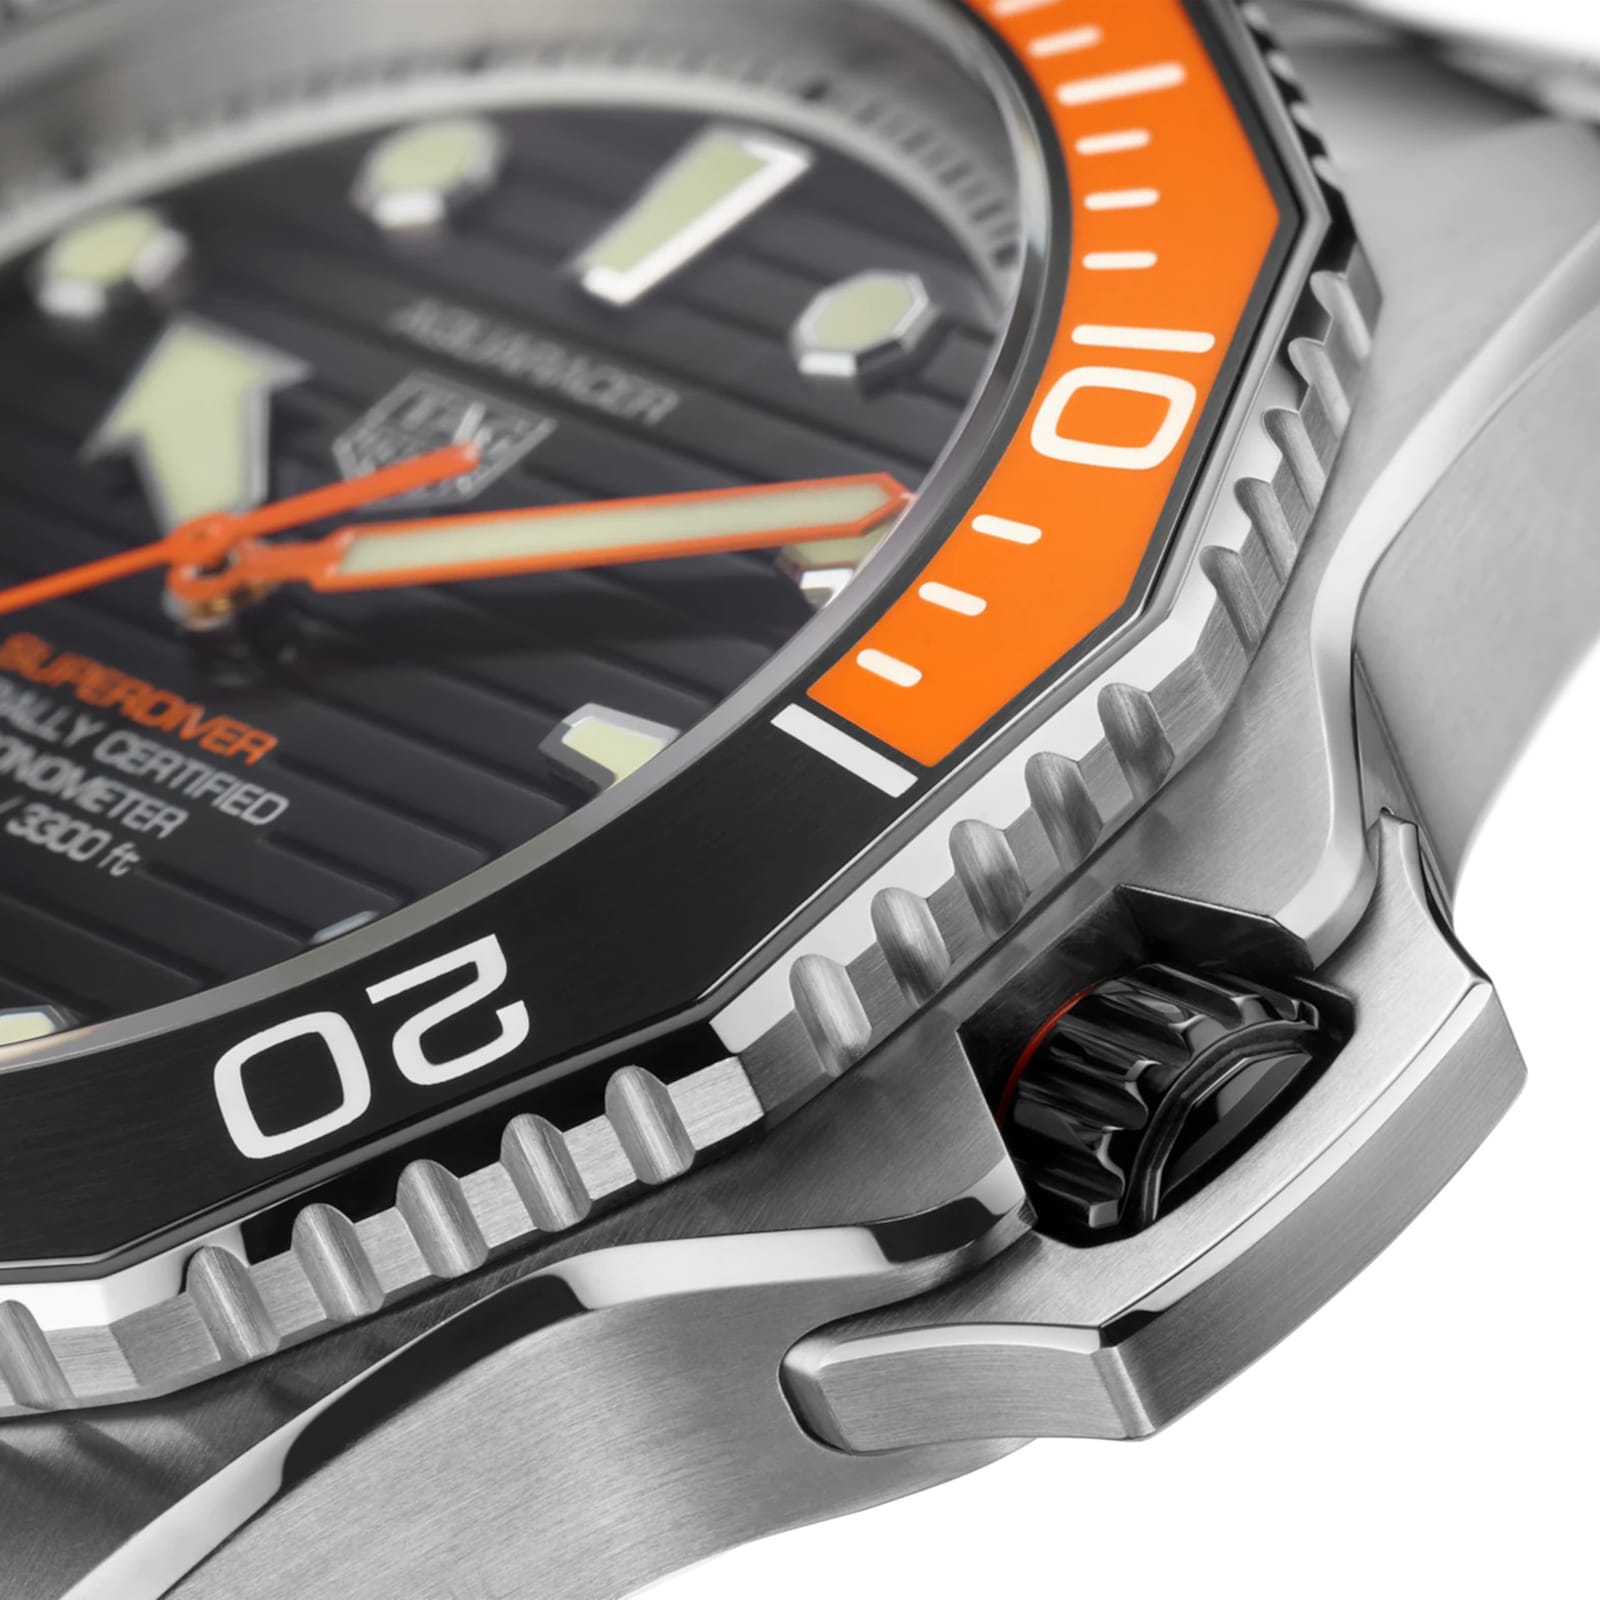 Aquaracer Professional Superdiver 45mm Mens Watch